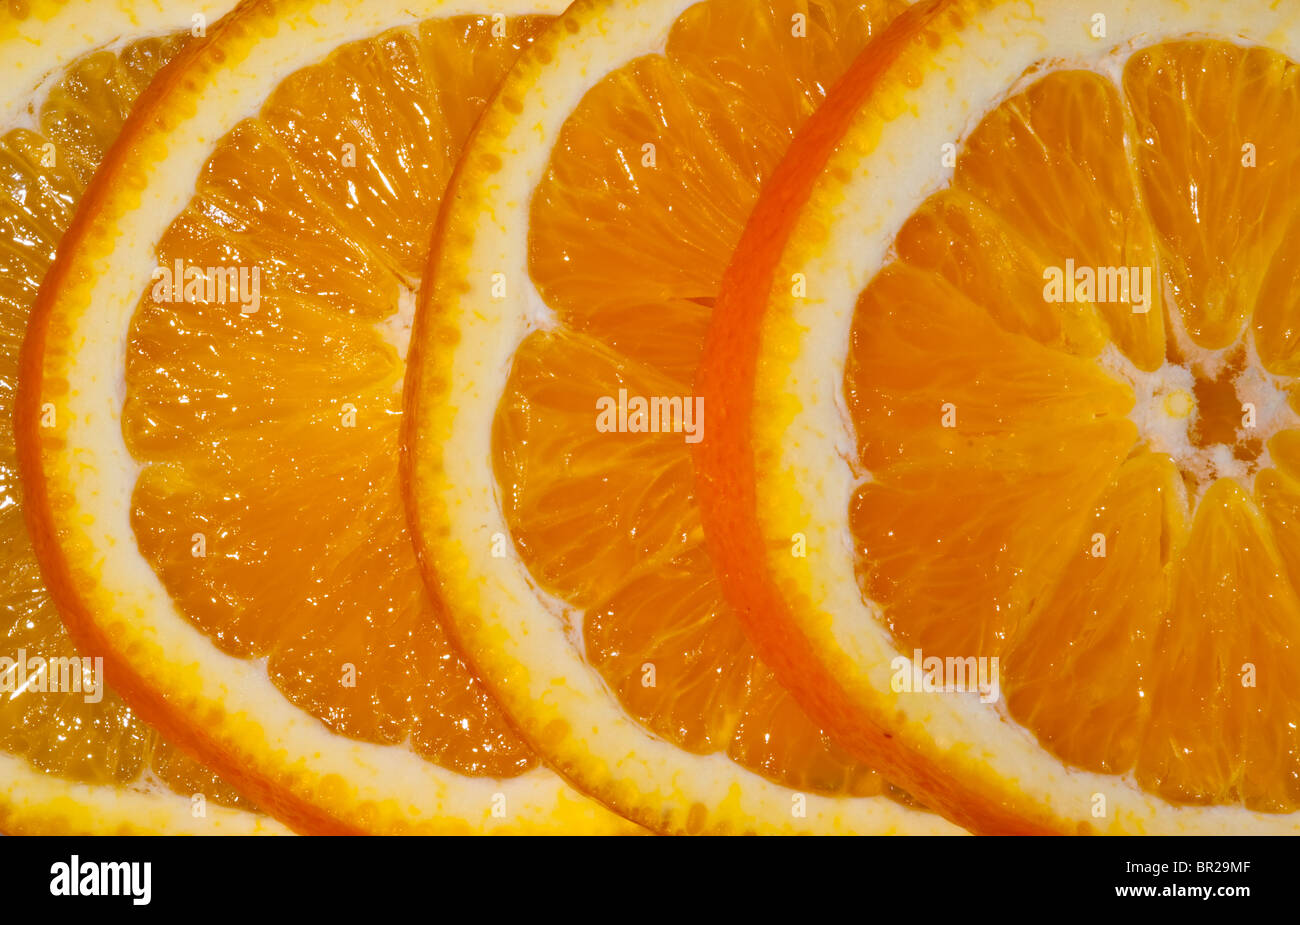 slices of orange Stock Photo